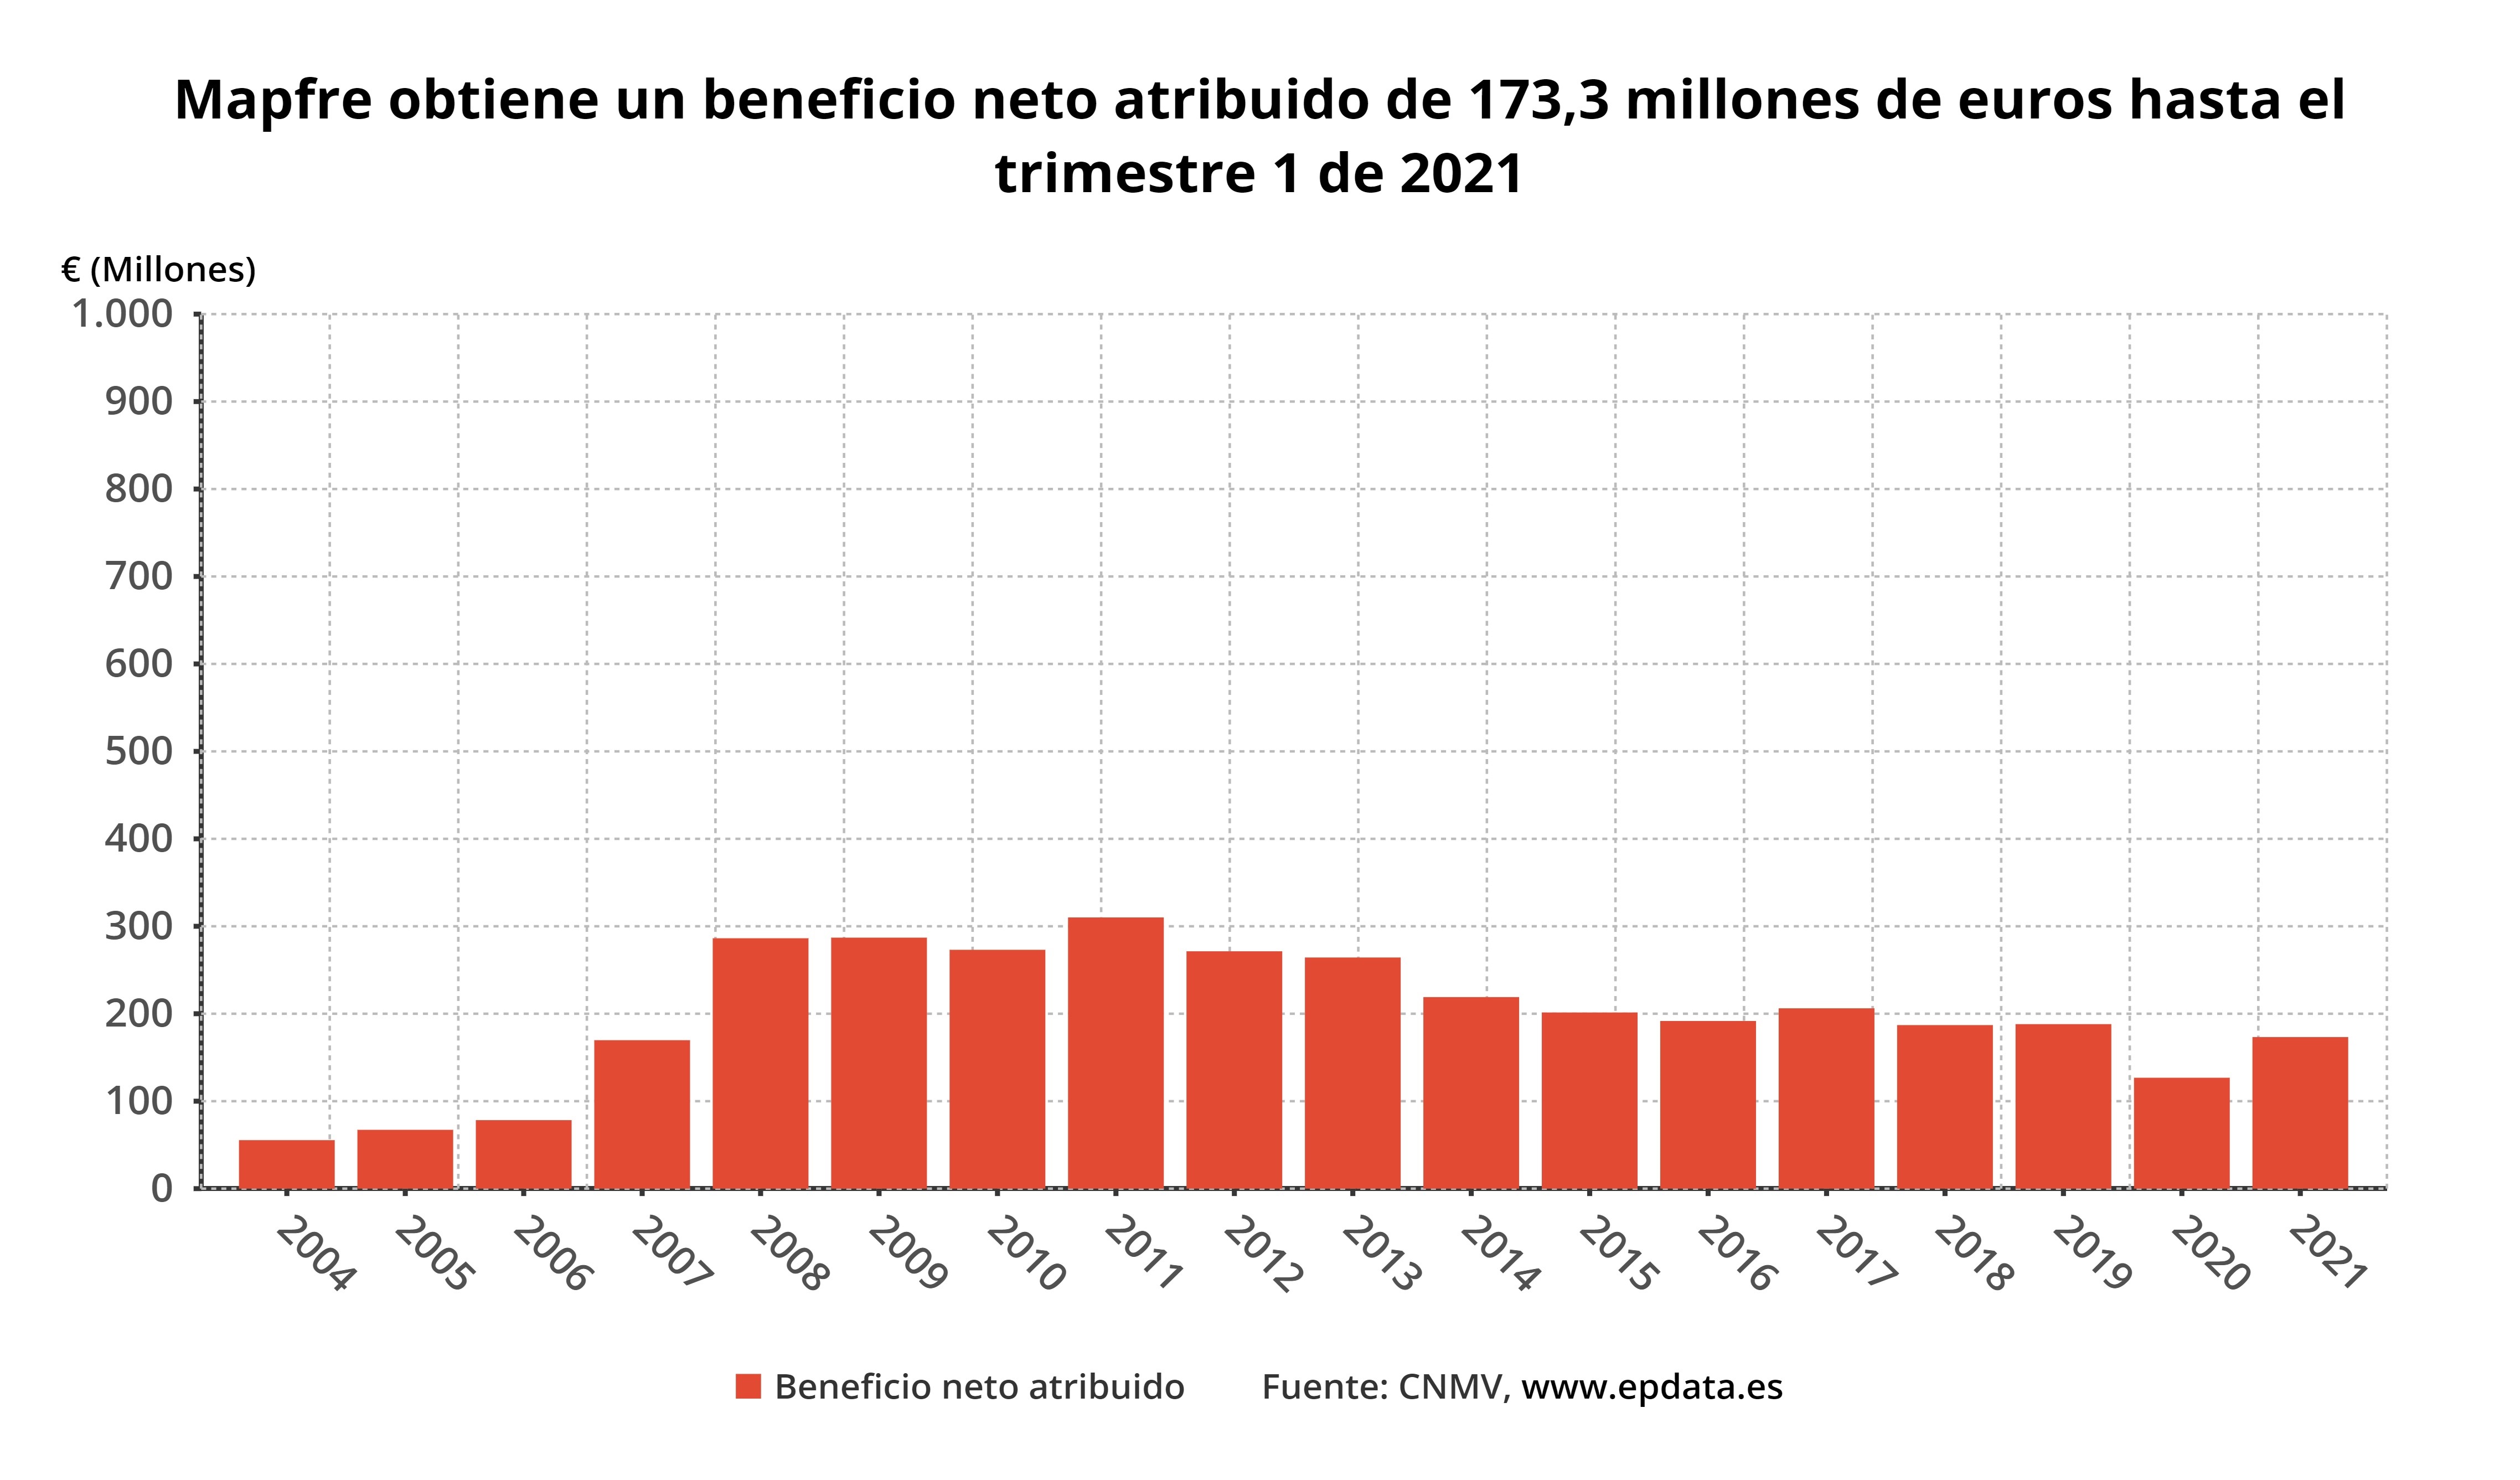 Mapfre obtiene un beneficio neto atribuido de 173,3 millones de euros hasta el trimestre 1 de 2021